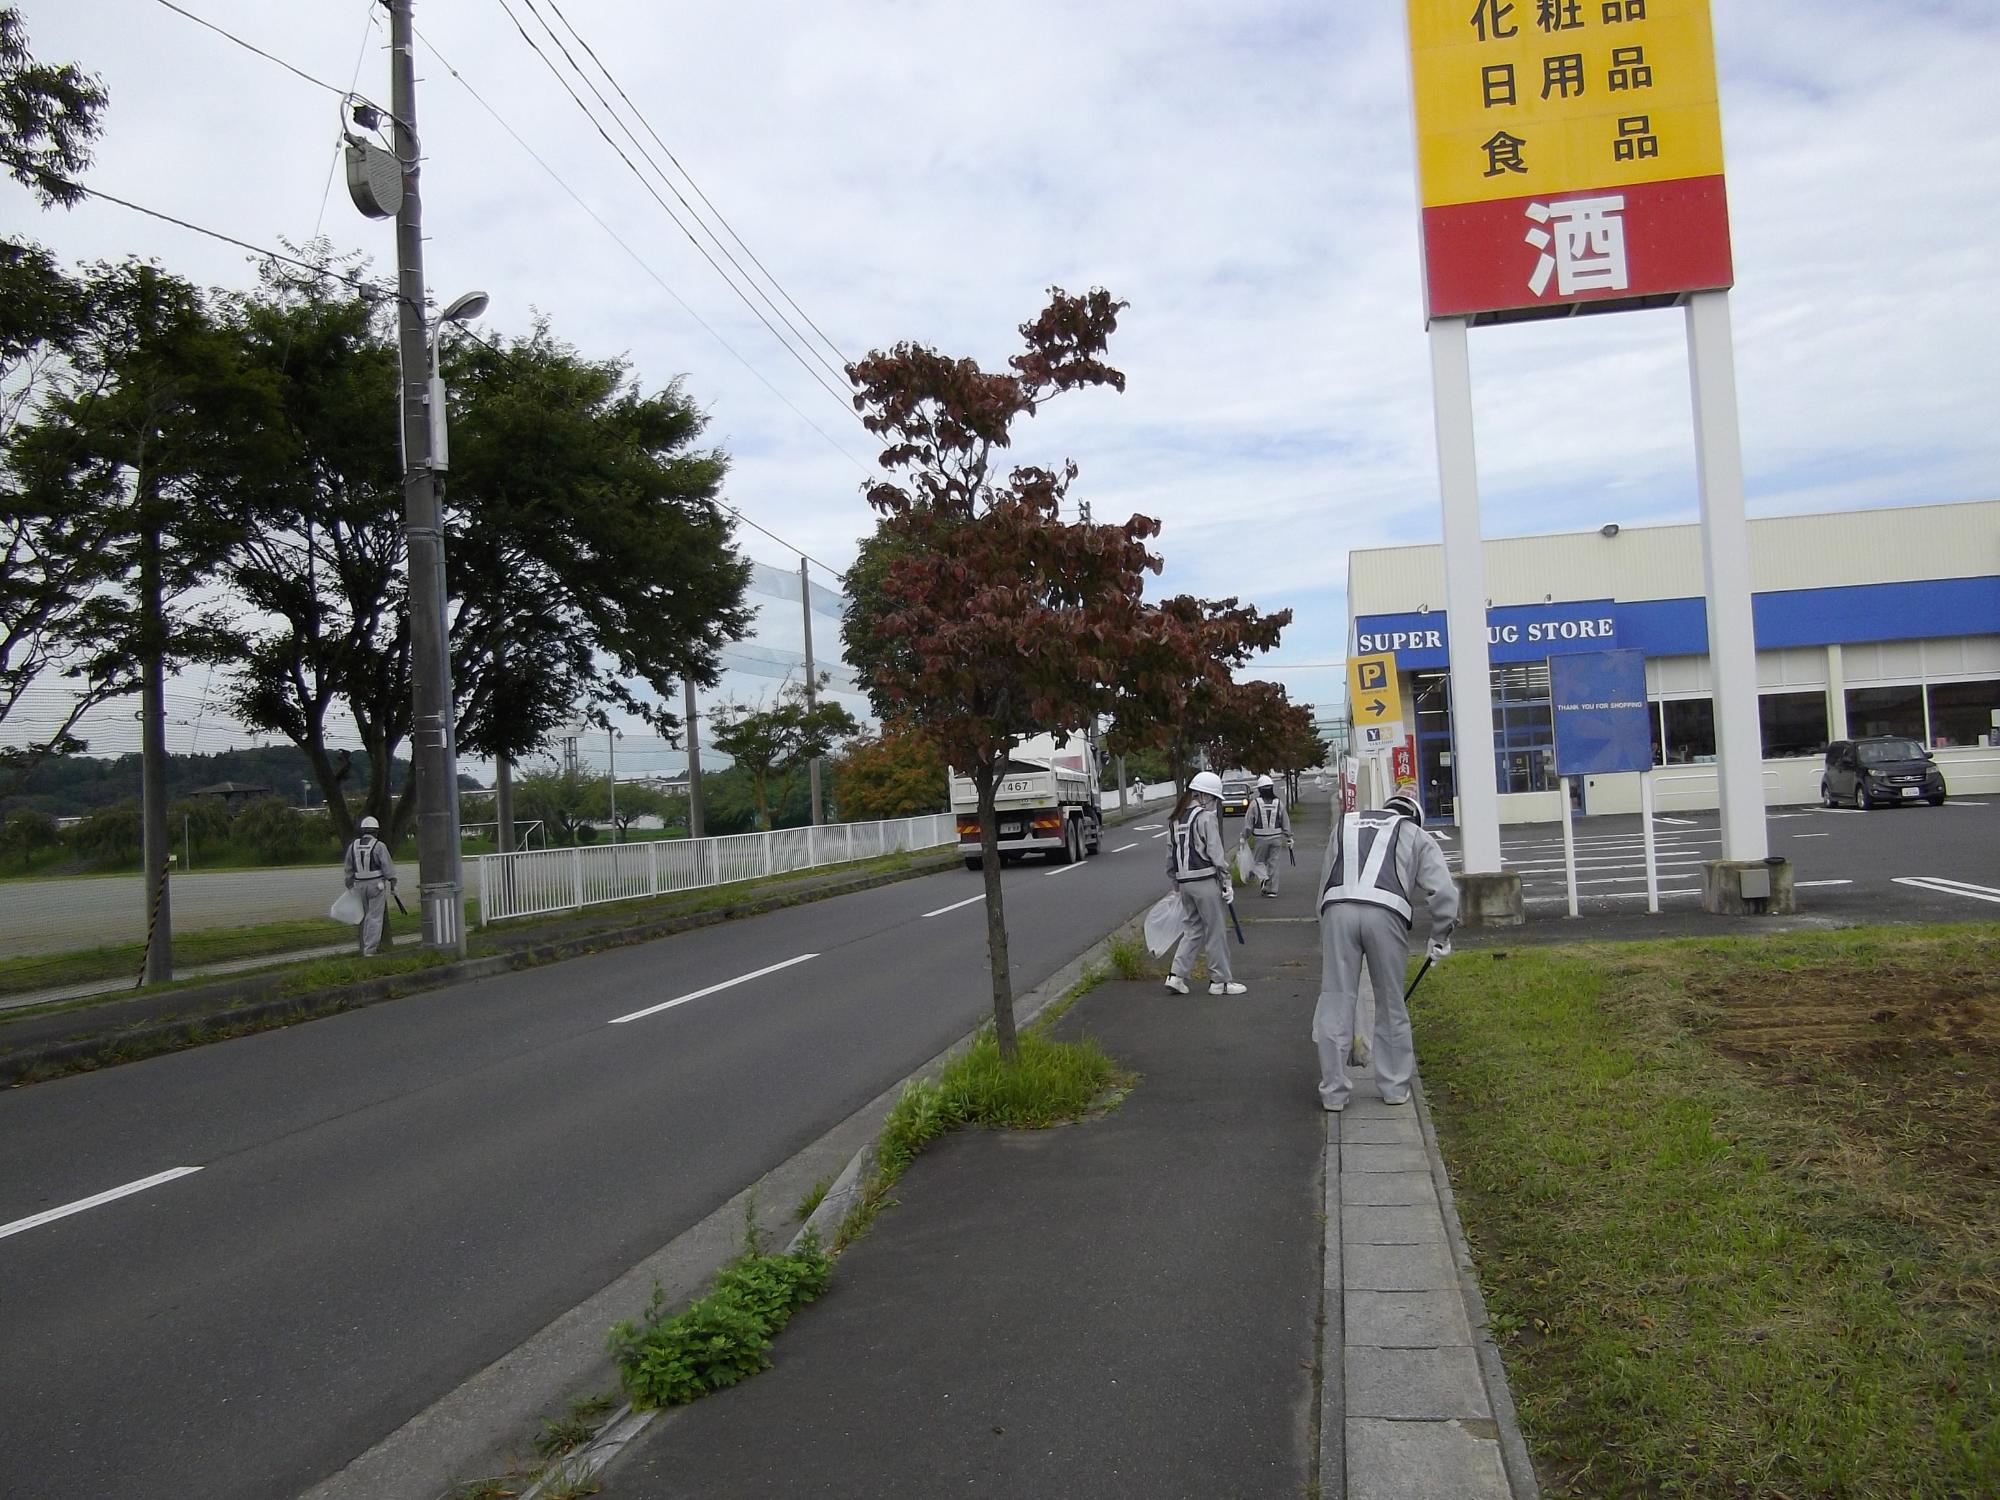 新井田地区の歩道のごみを拾っている写真